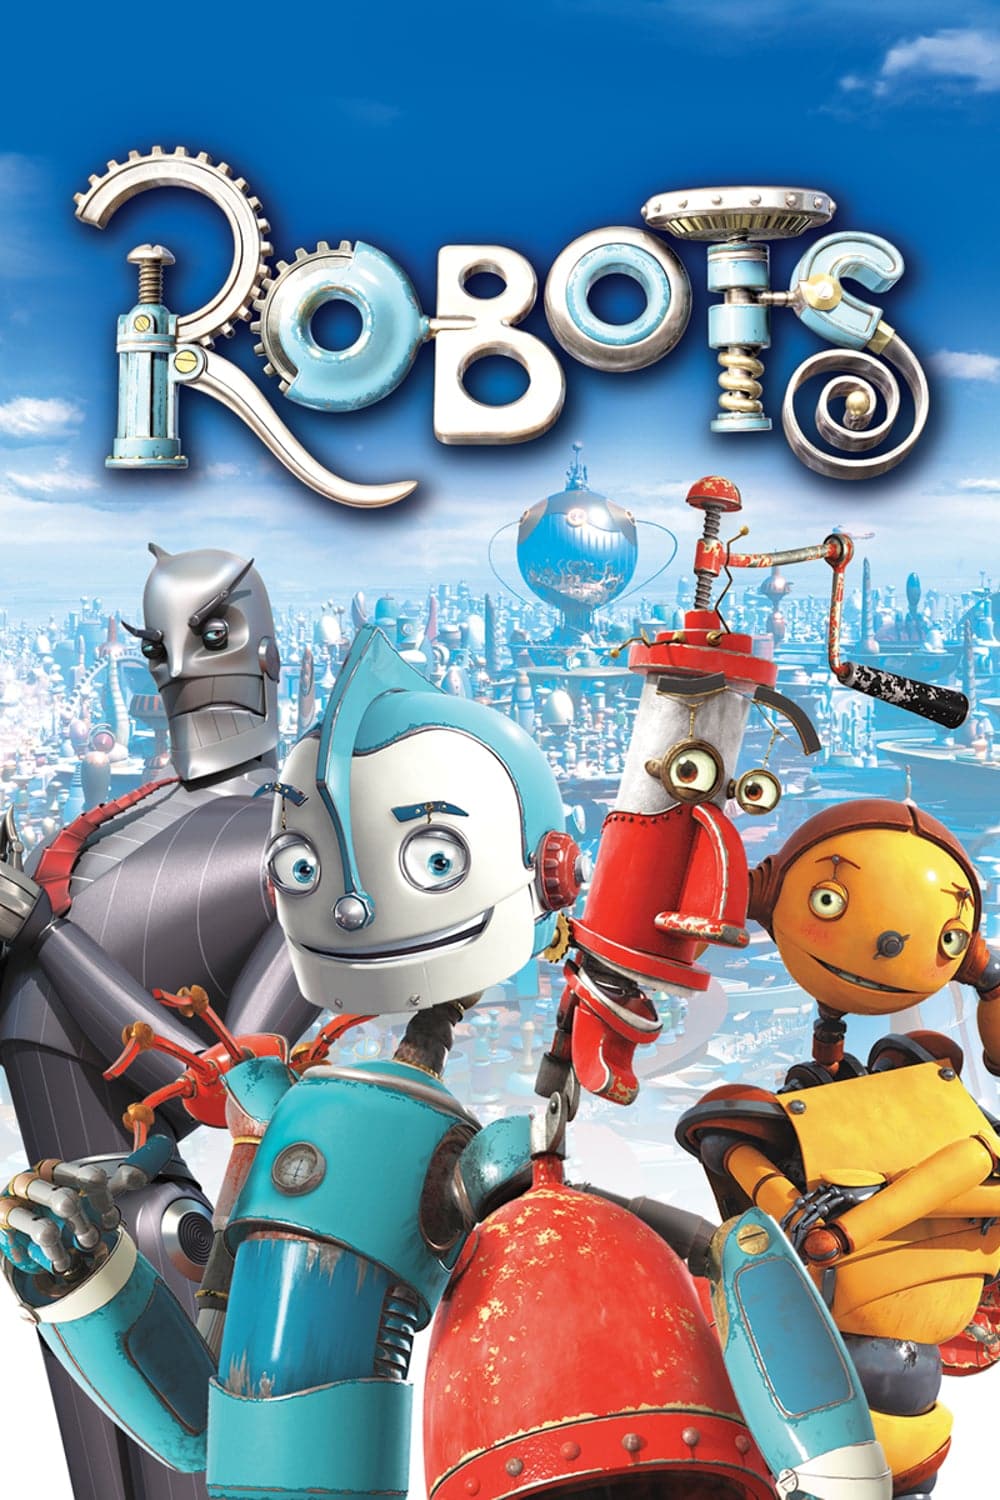 Plakat von "Robots"